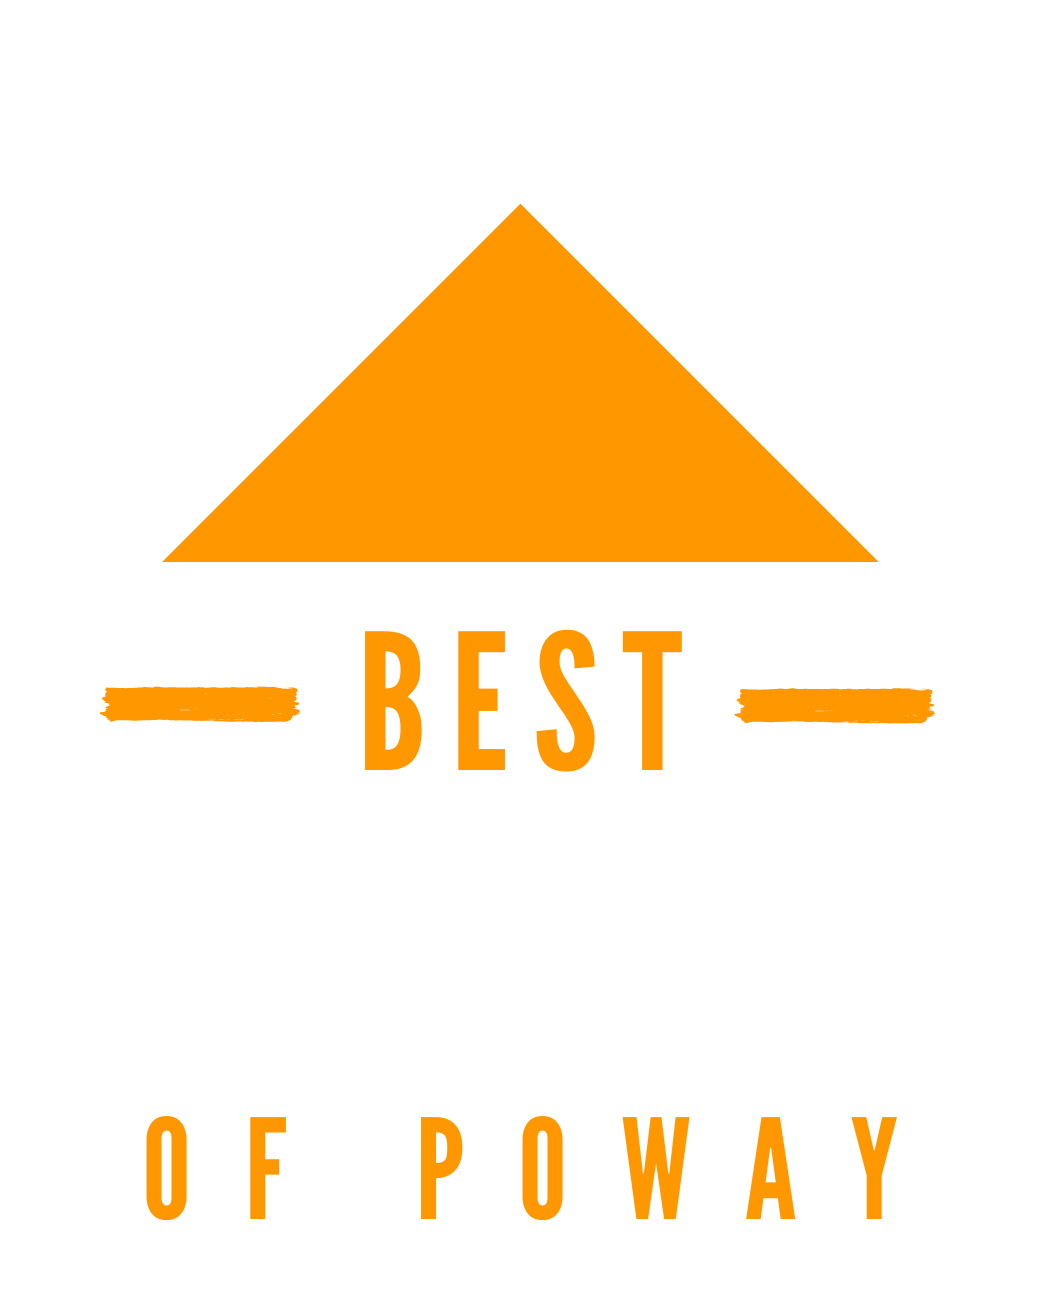 Best Garage Door & Gate Repair Services of Poway